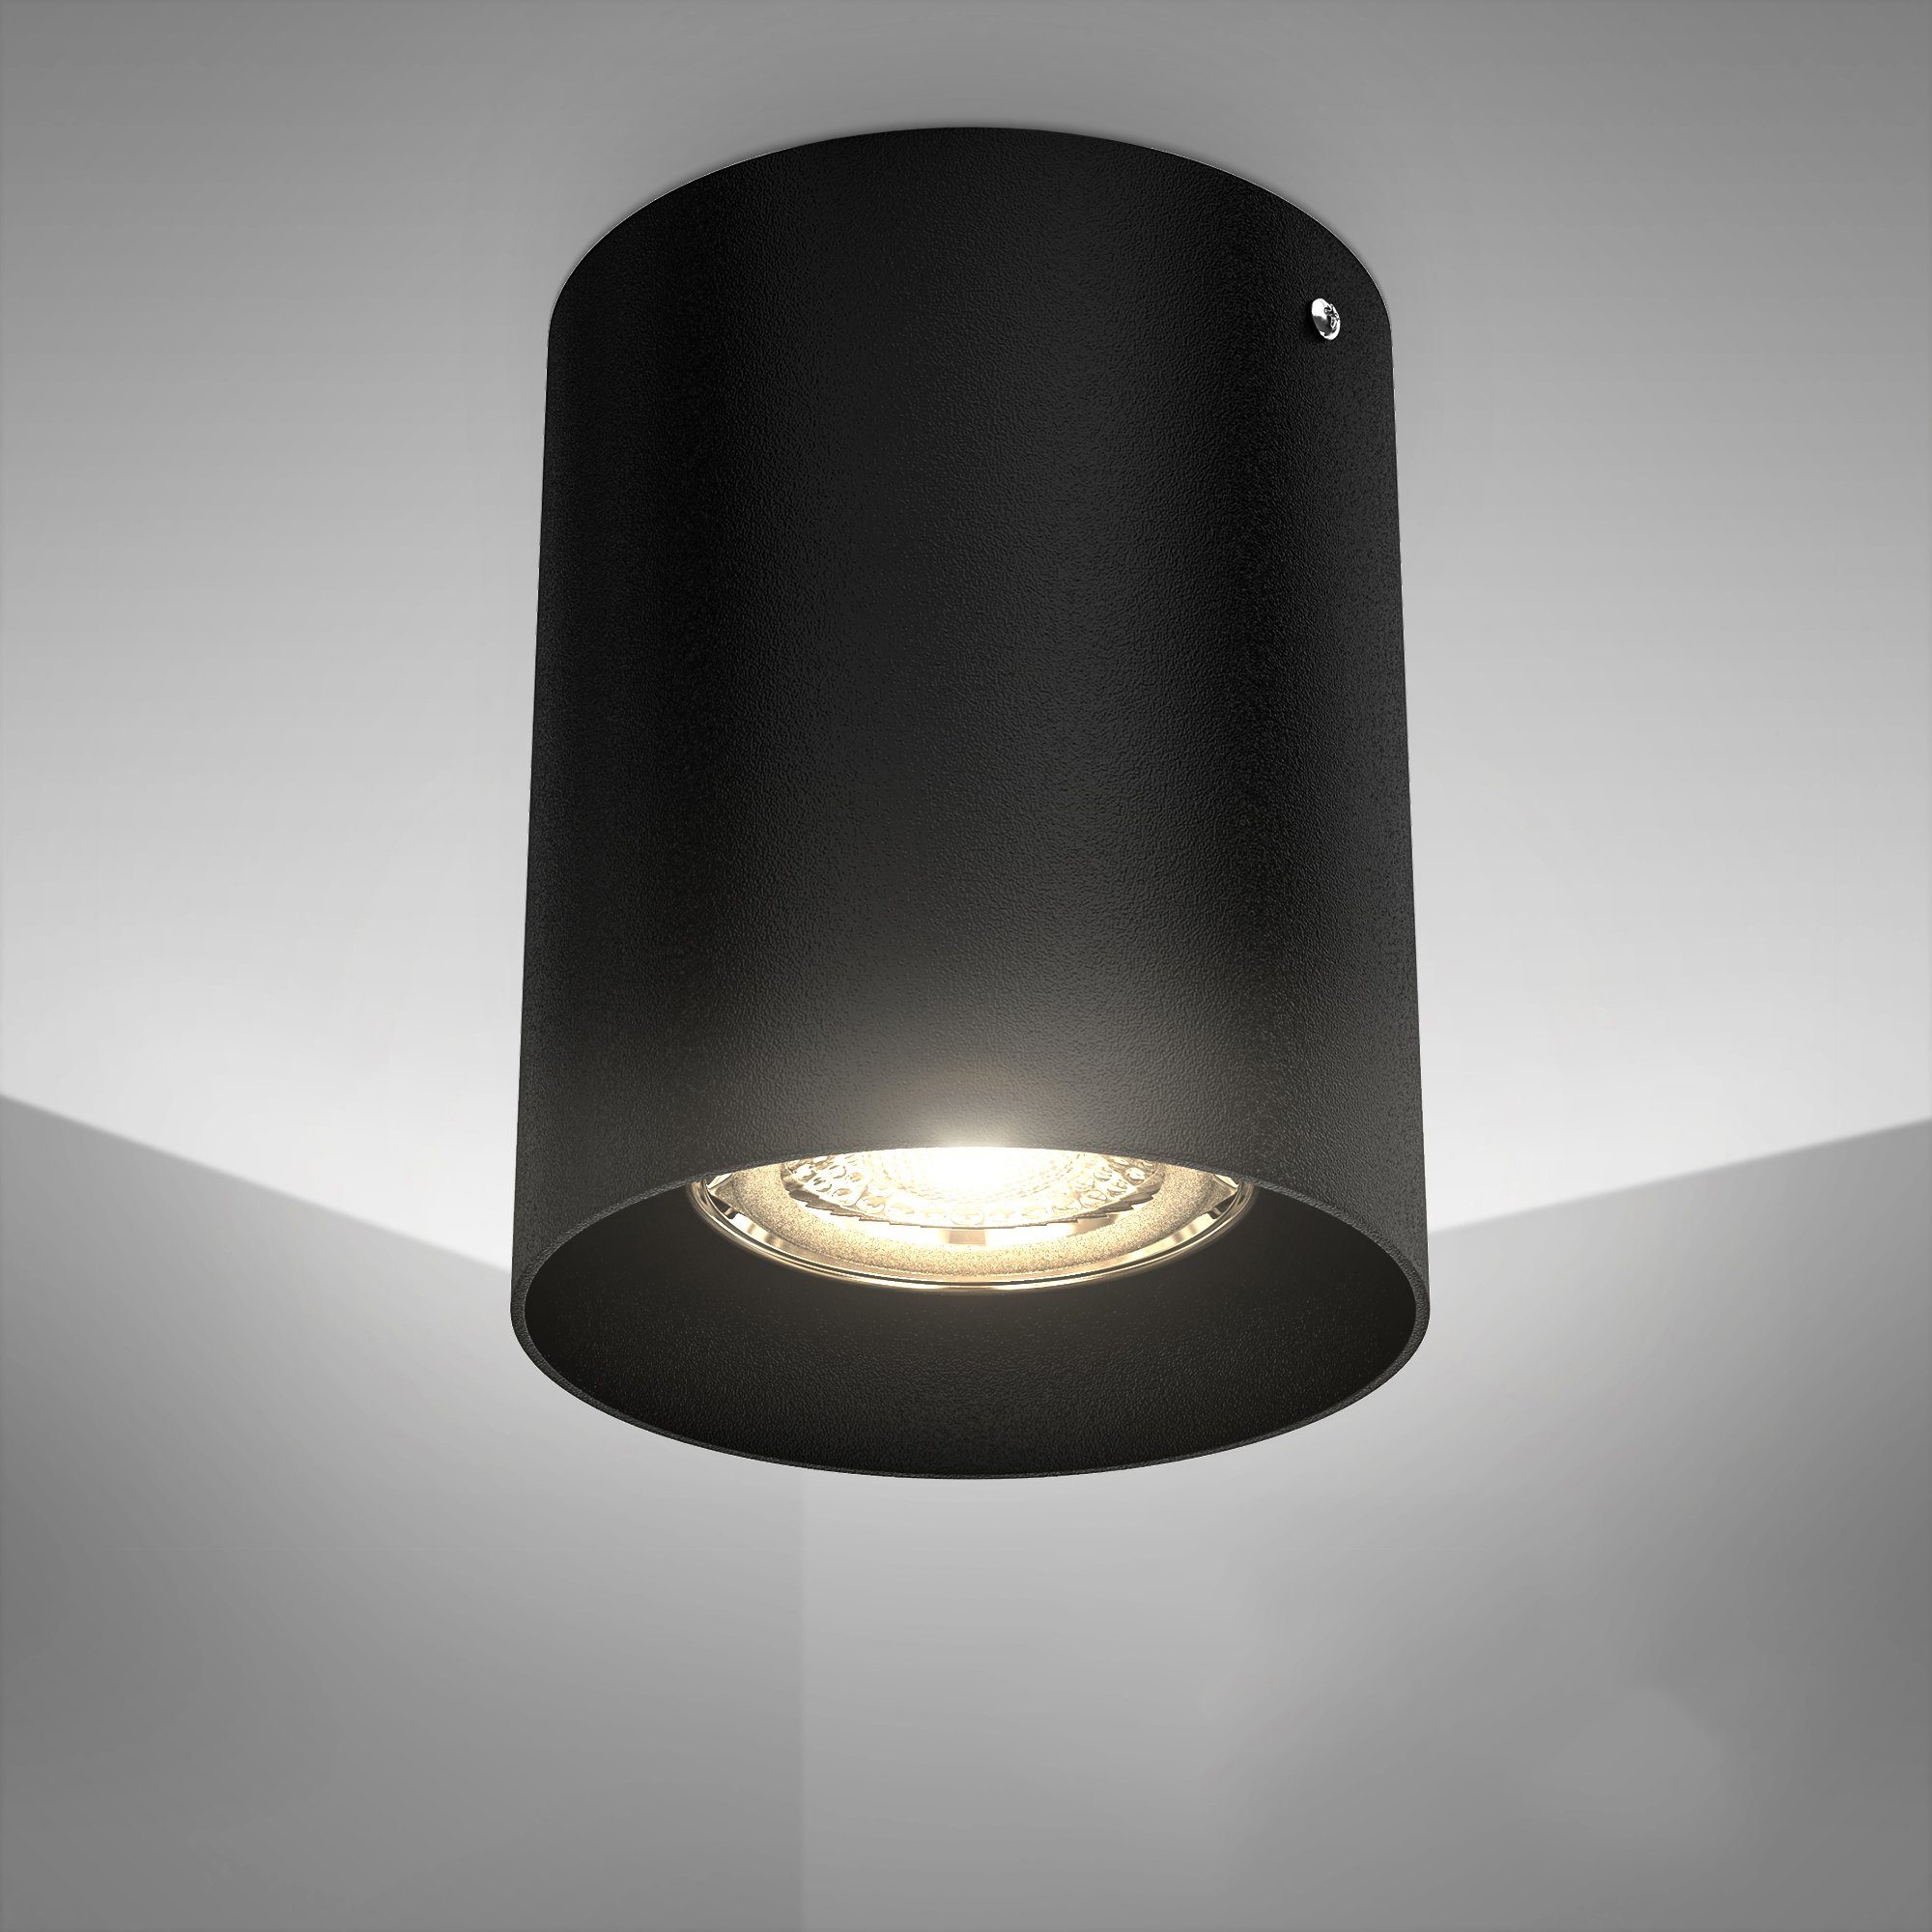 B.K.Licht Aufbauleuchte, LED Deckenspot Aufbaulampe Strahler Downlight  Deckenlampe schwarz metall GU10 online kaufen | OTTO